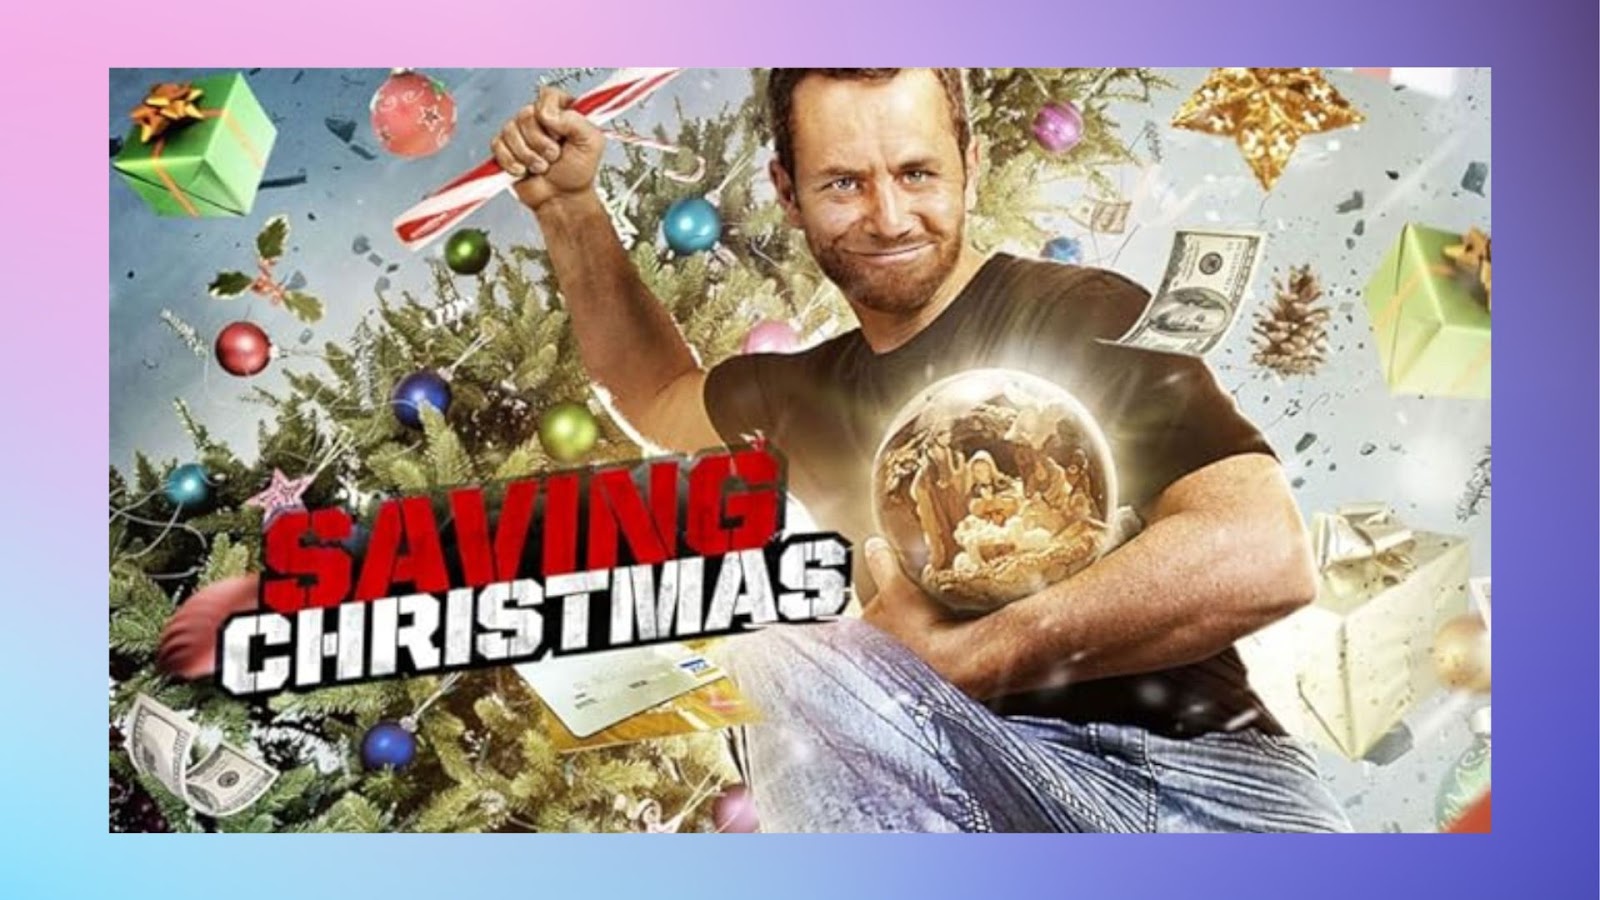 Christian Movies on Hulu - Saving Christmas